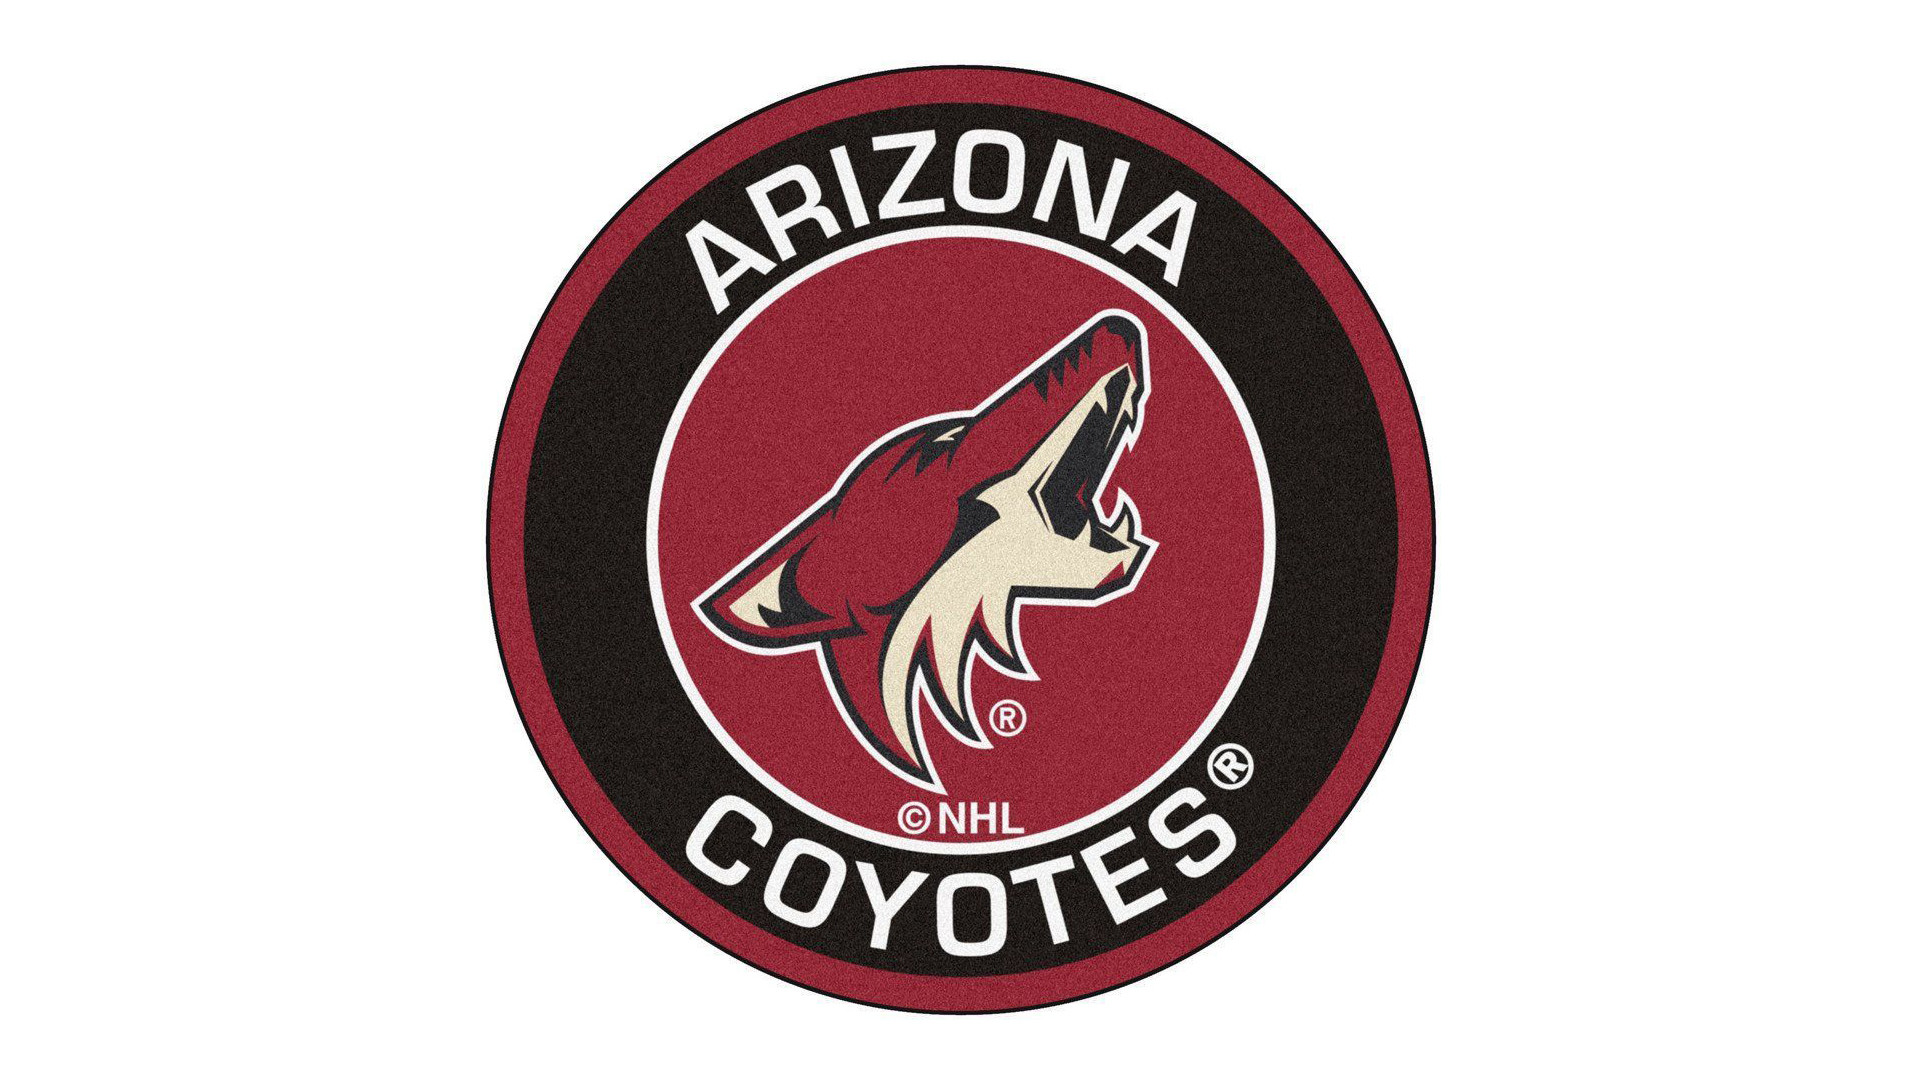 Arizona Coyotes Wallpaper (80+ images)